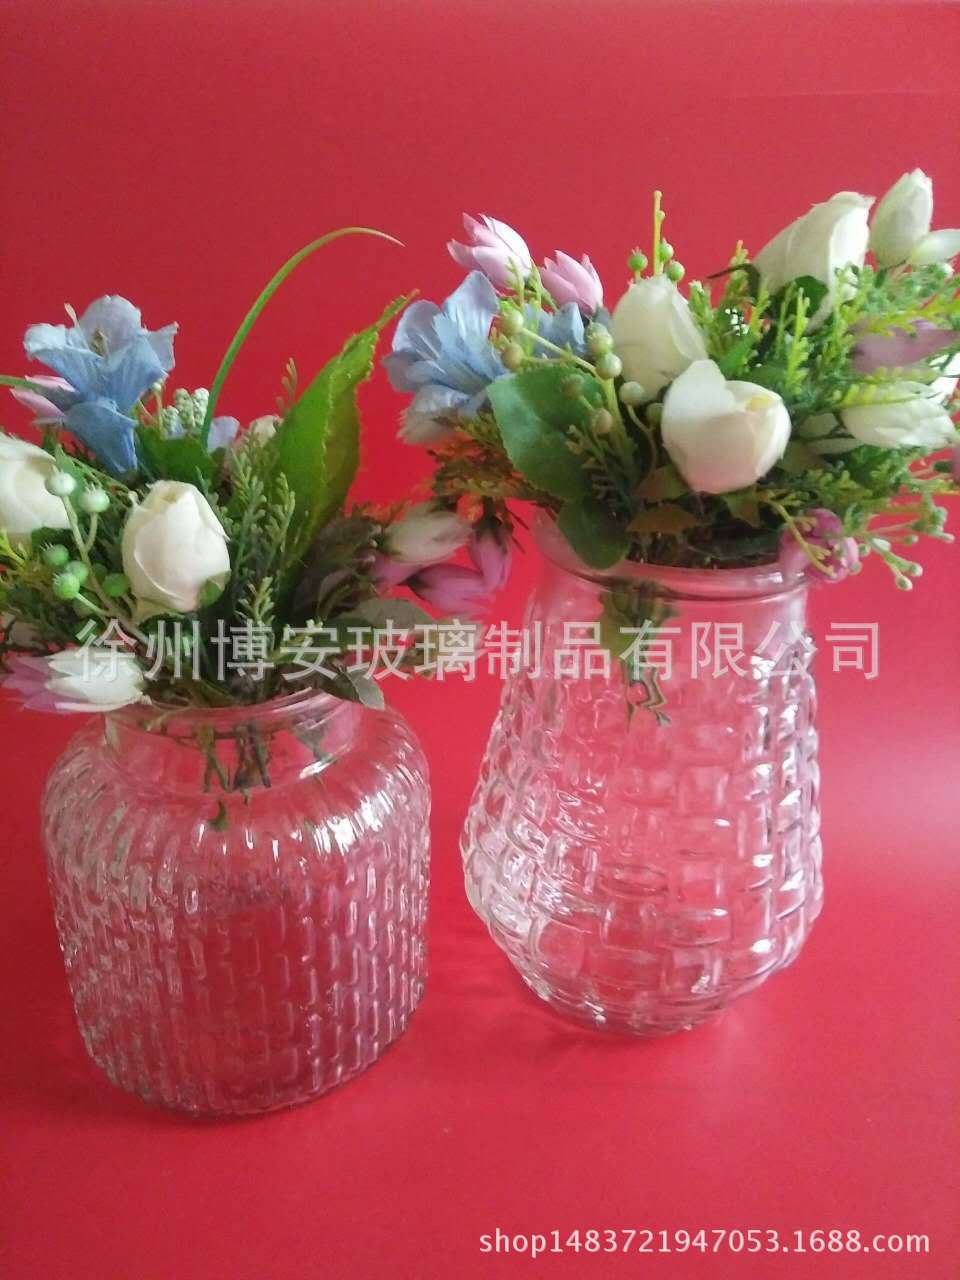 厂家直销透明玻璃花瓶地中海式插花瓶古典花瓶 地中古典花瓶报价图片